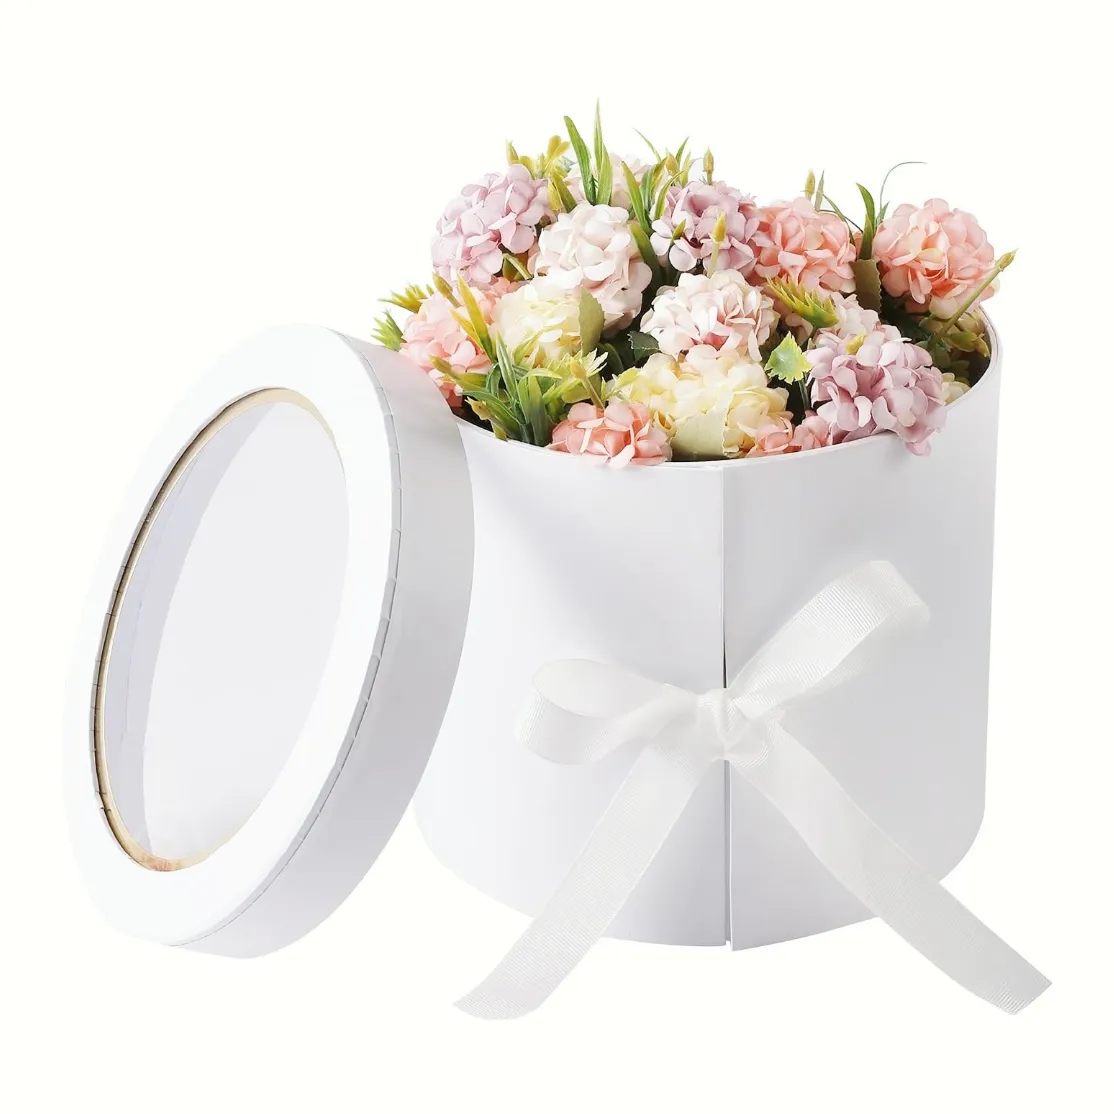 2 Ebenen Luxus Pappe Runde Blumen kasten Weiße Geschenk boxen für Blumen Aufbewahrung sbox für die Inneneinrichtung